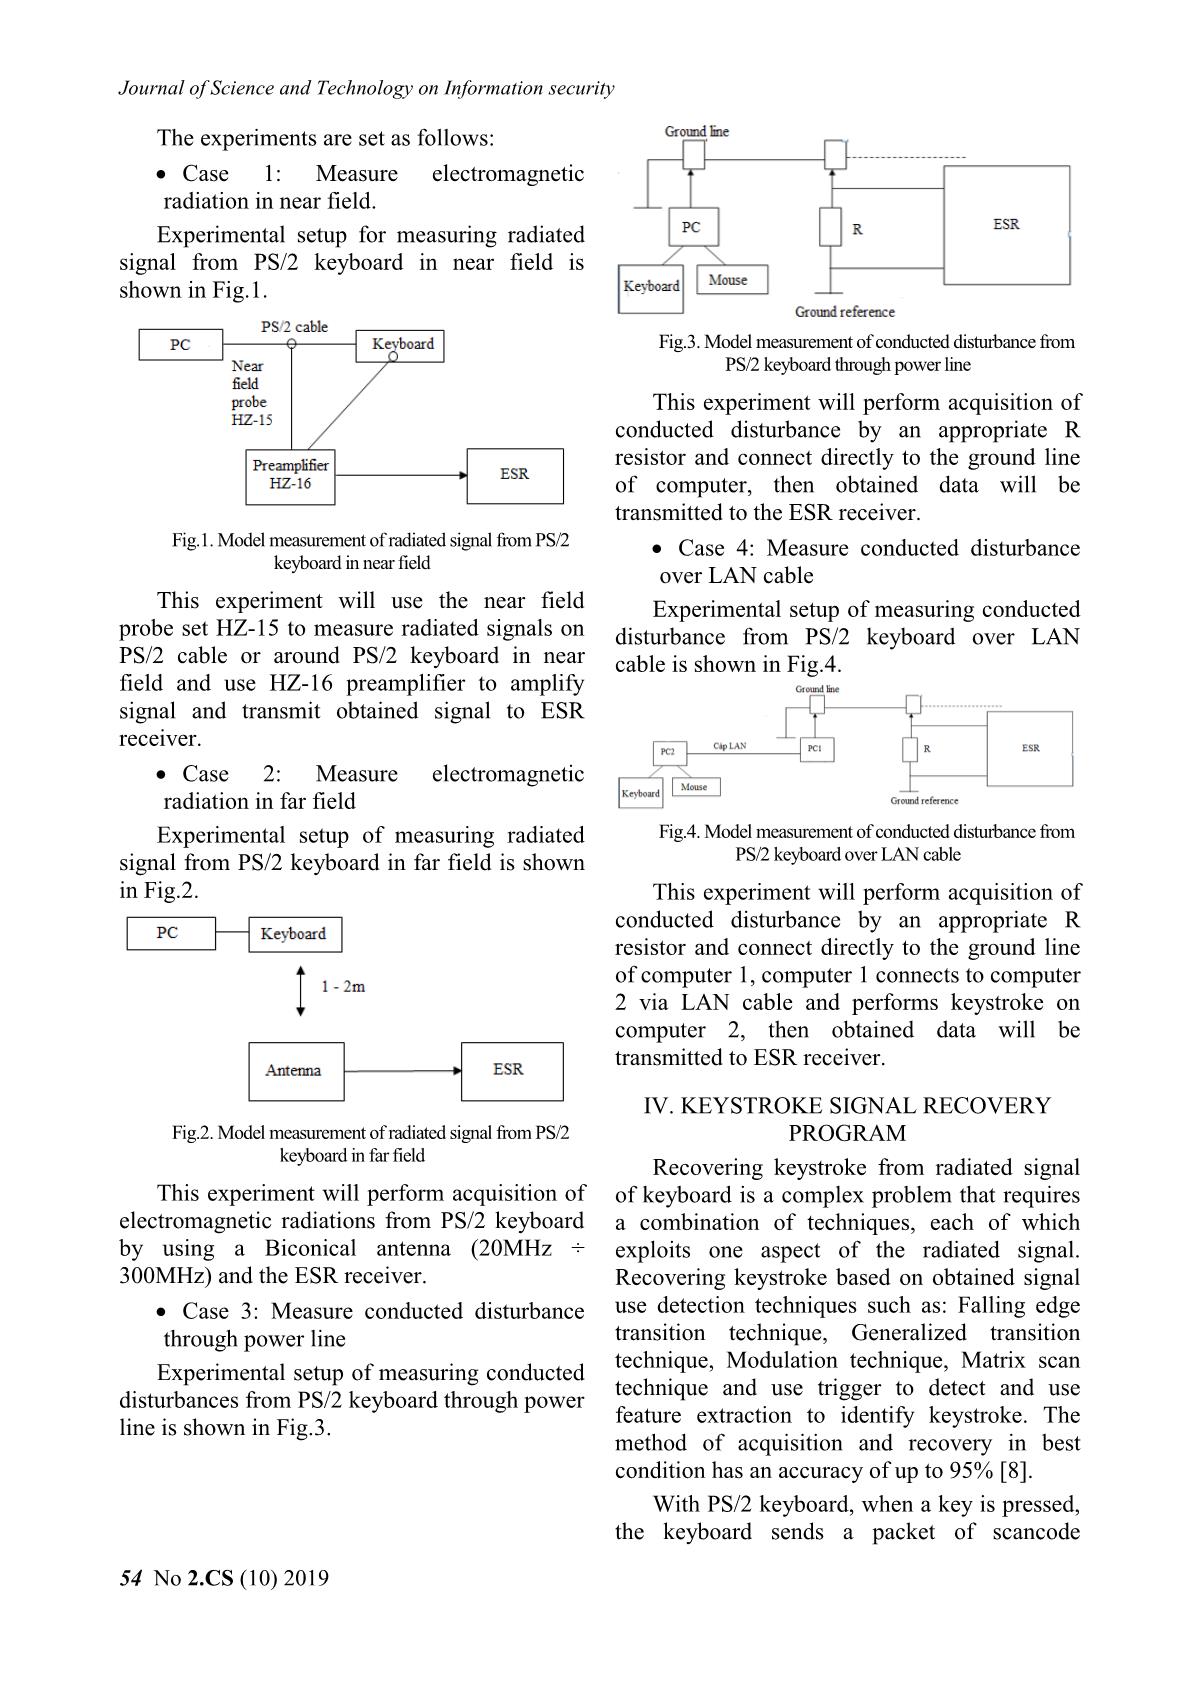 Information leakage through electromagnetic radiation of ps/2 keyboard trang 4